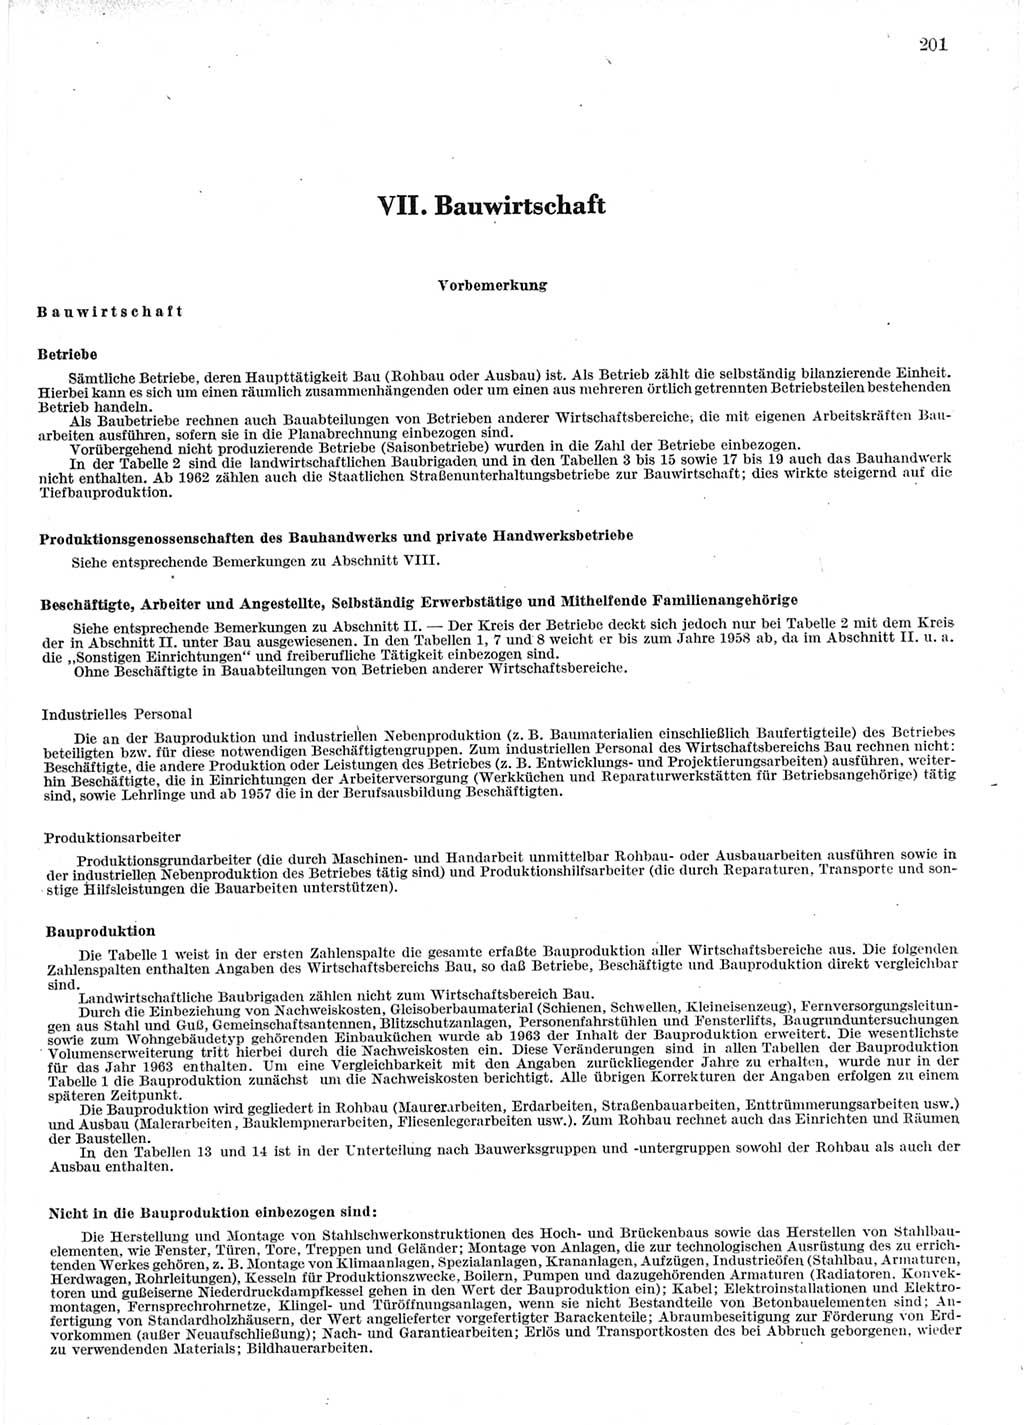 Statistisches Jahrbuch der Deutschen Demokratischen Republik (DDR) 1964, Seite 201 (Stat. Jb. DDR 1964, S. 201)